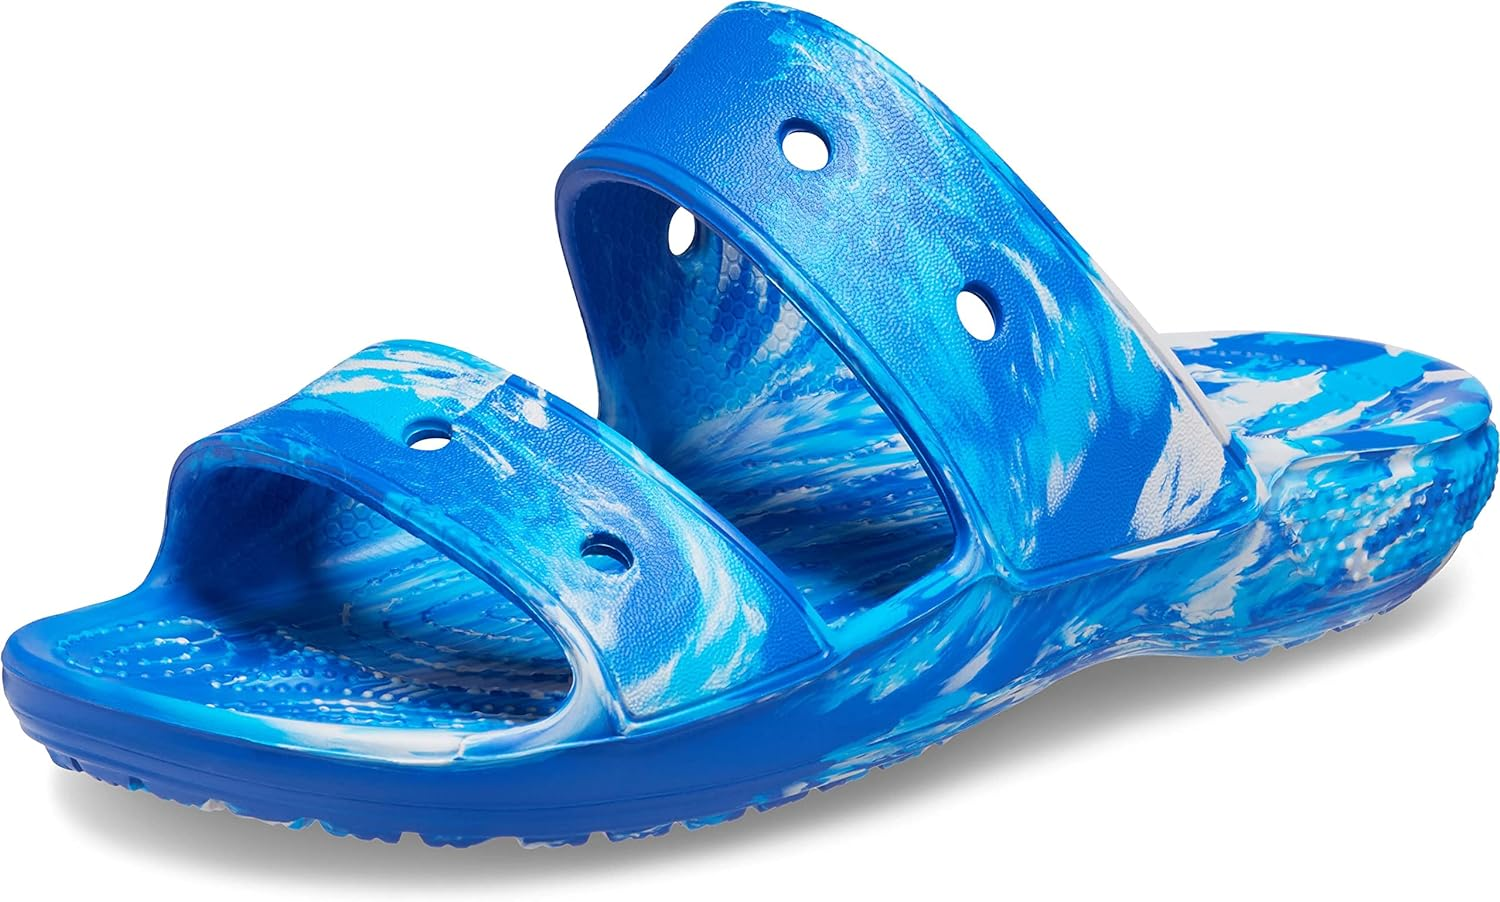 Crocs Unisex-Adult Classic Tie Dye Two-Strap Sandals Slide men's sz 12 and 13 $15.99